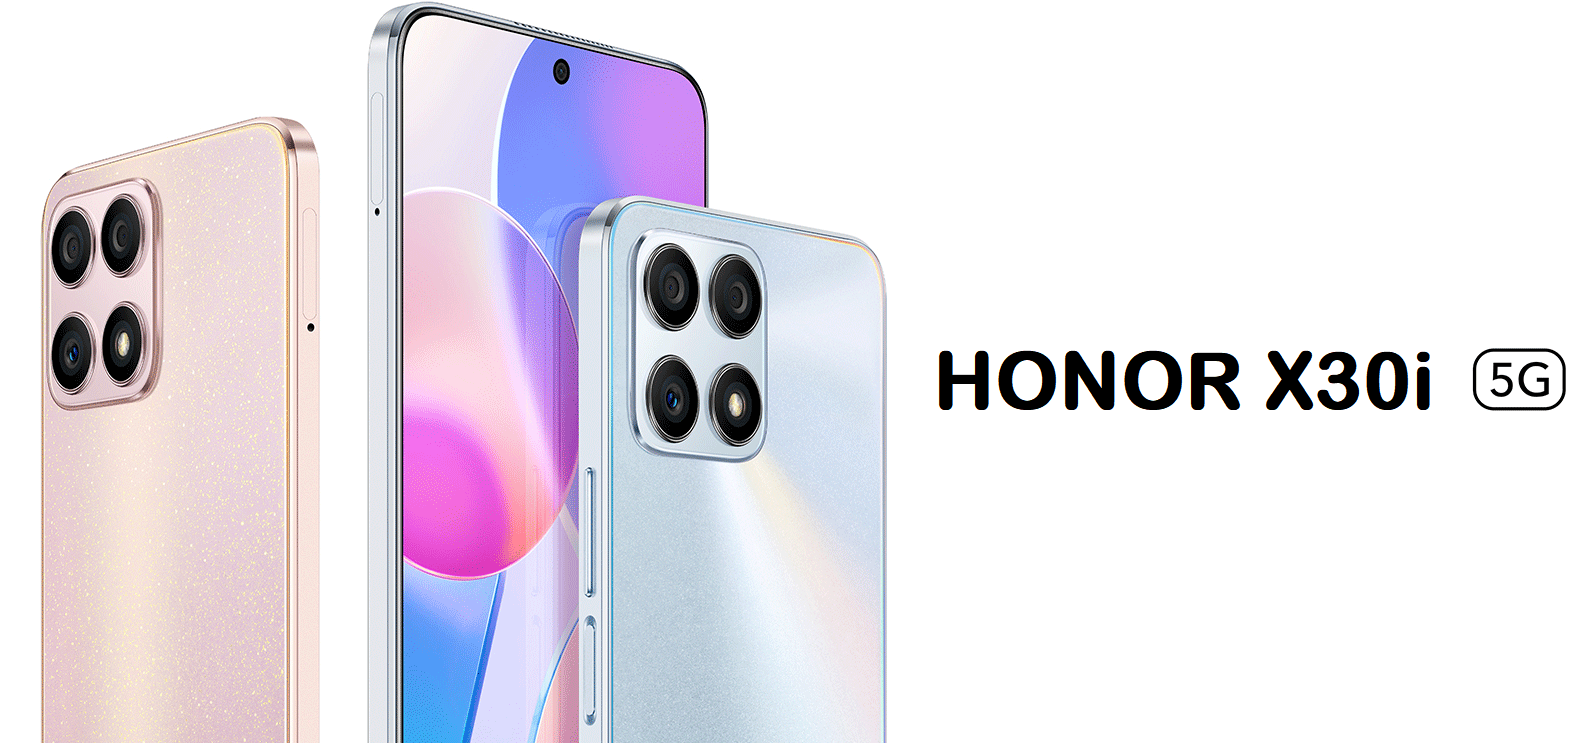 Honor X30i - Dimensity 810, appareil photo de 48 Mpx, Android 11 et Magic UI 5.0 à partir de 220 $